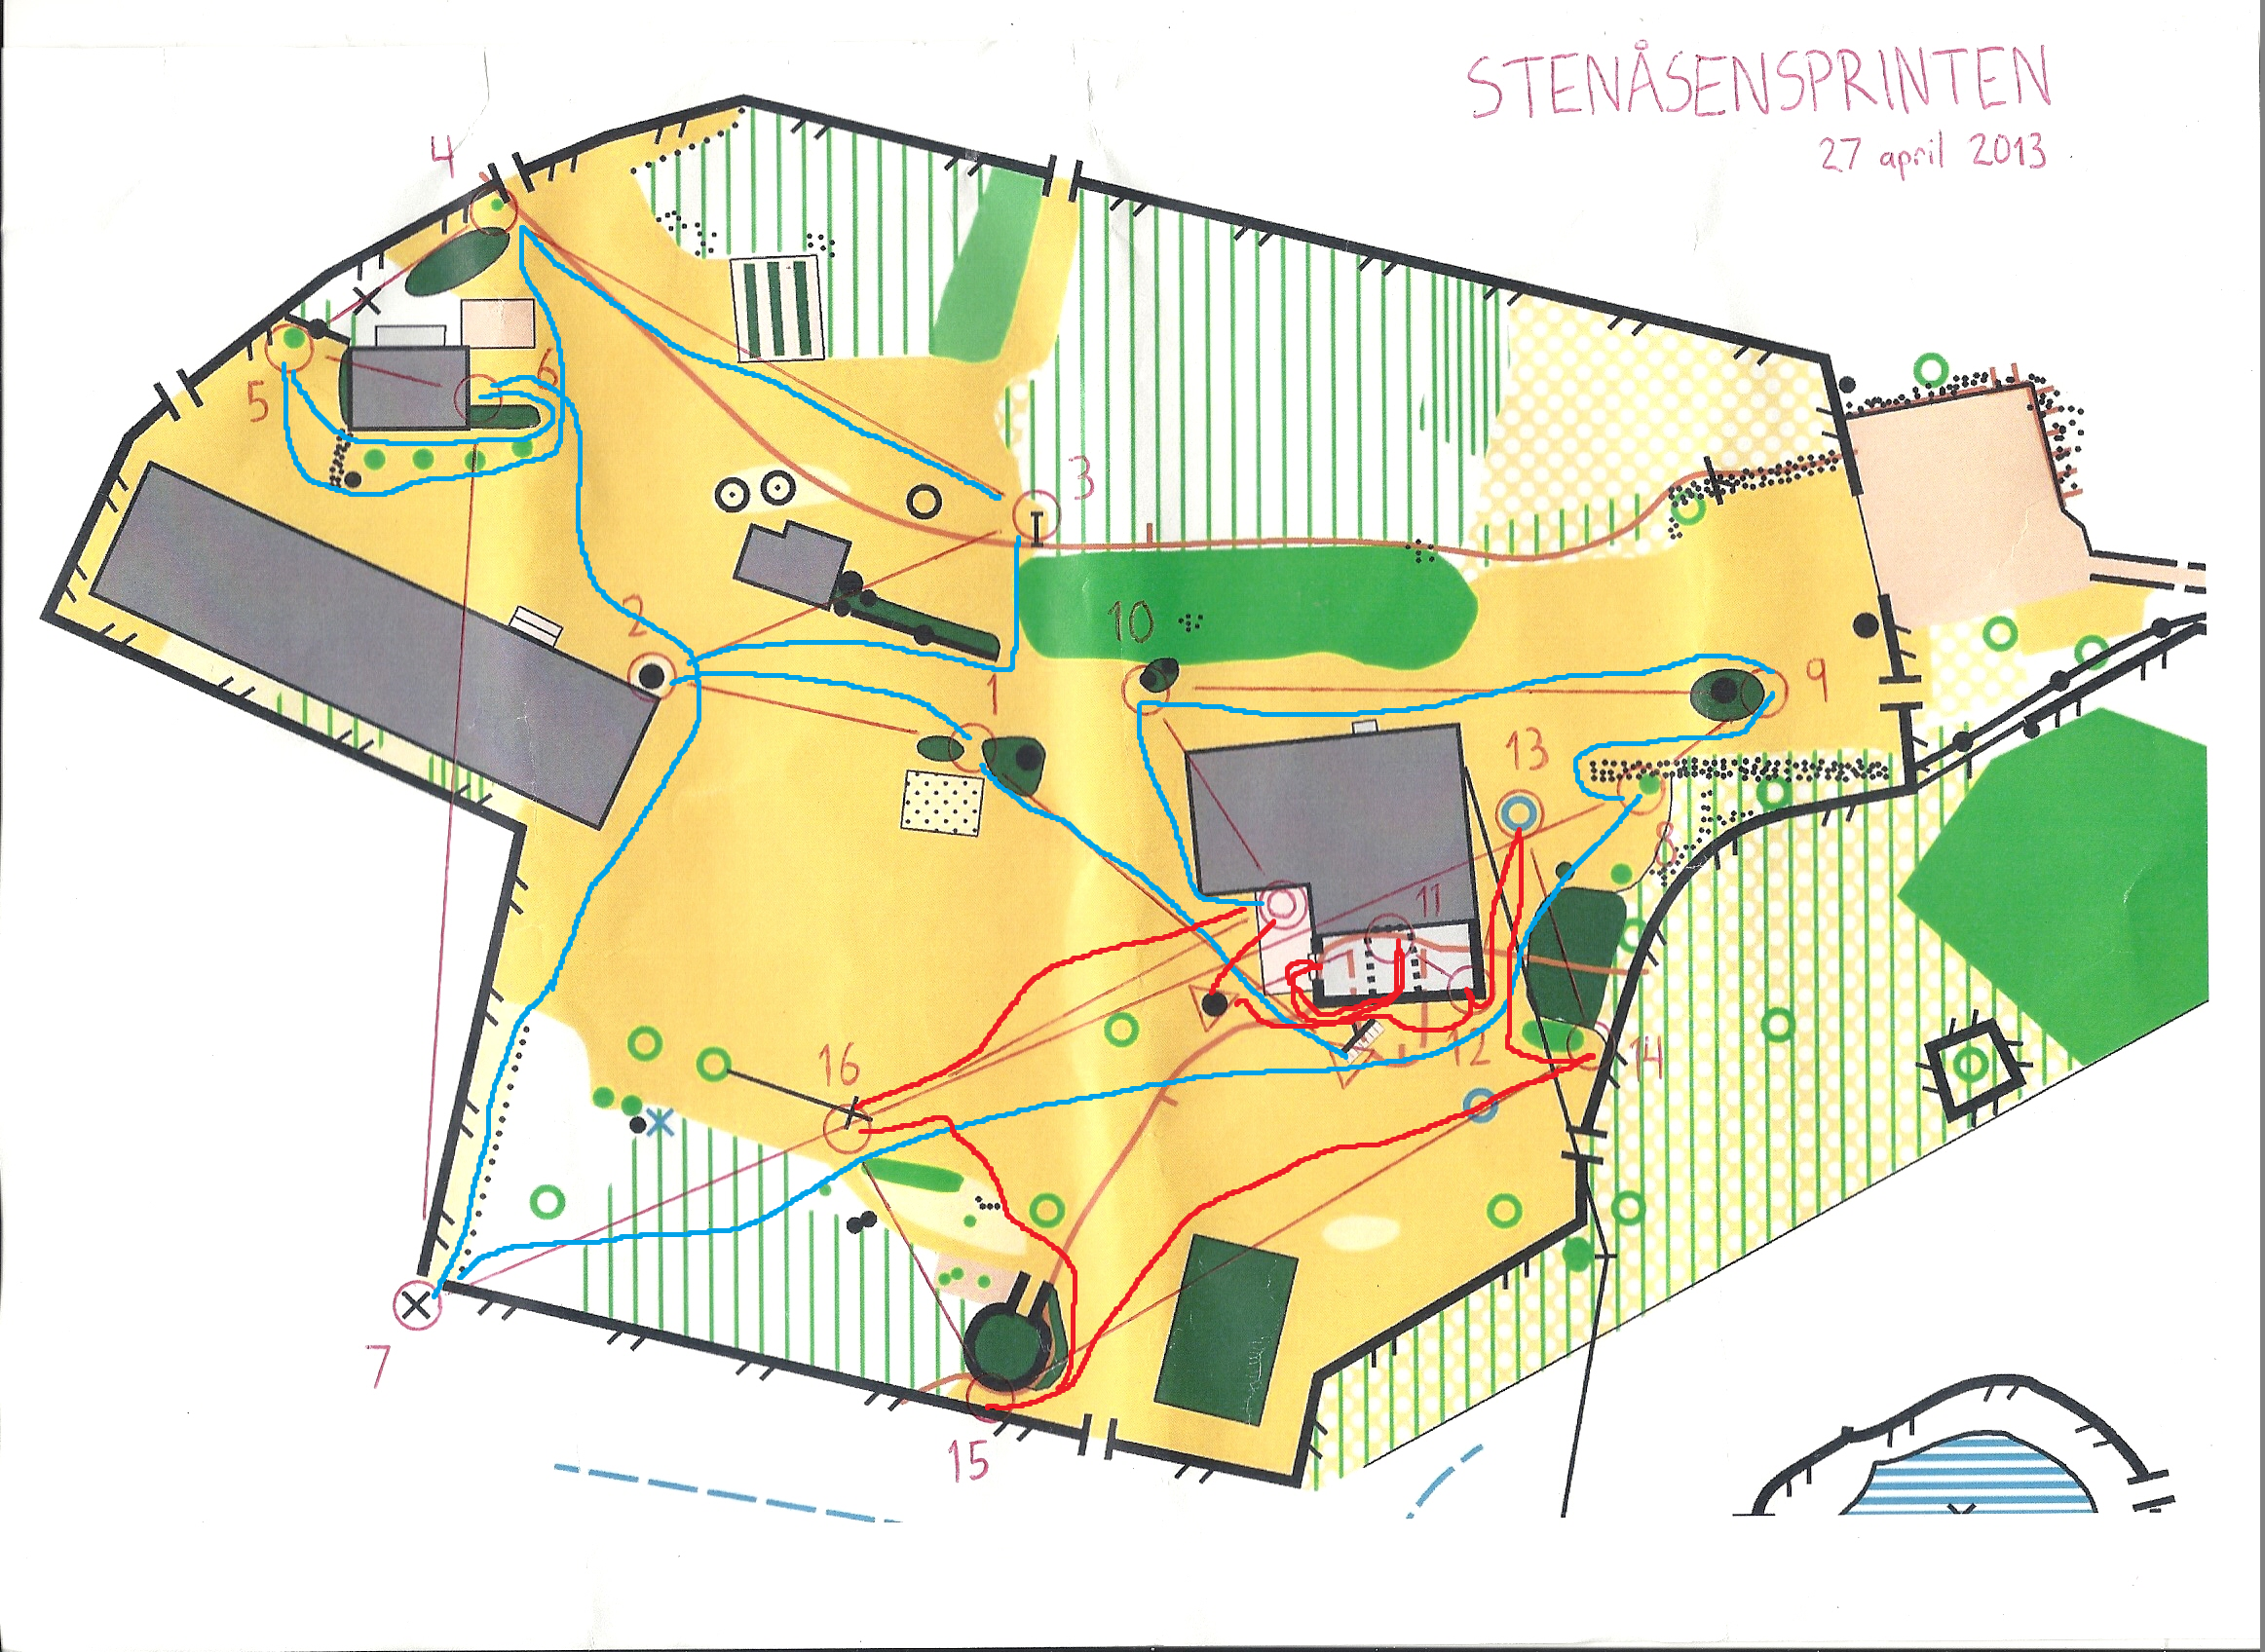 Stenåsensprinten (2013-04-27) (26/01/2015)